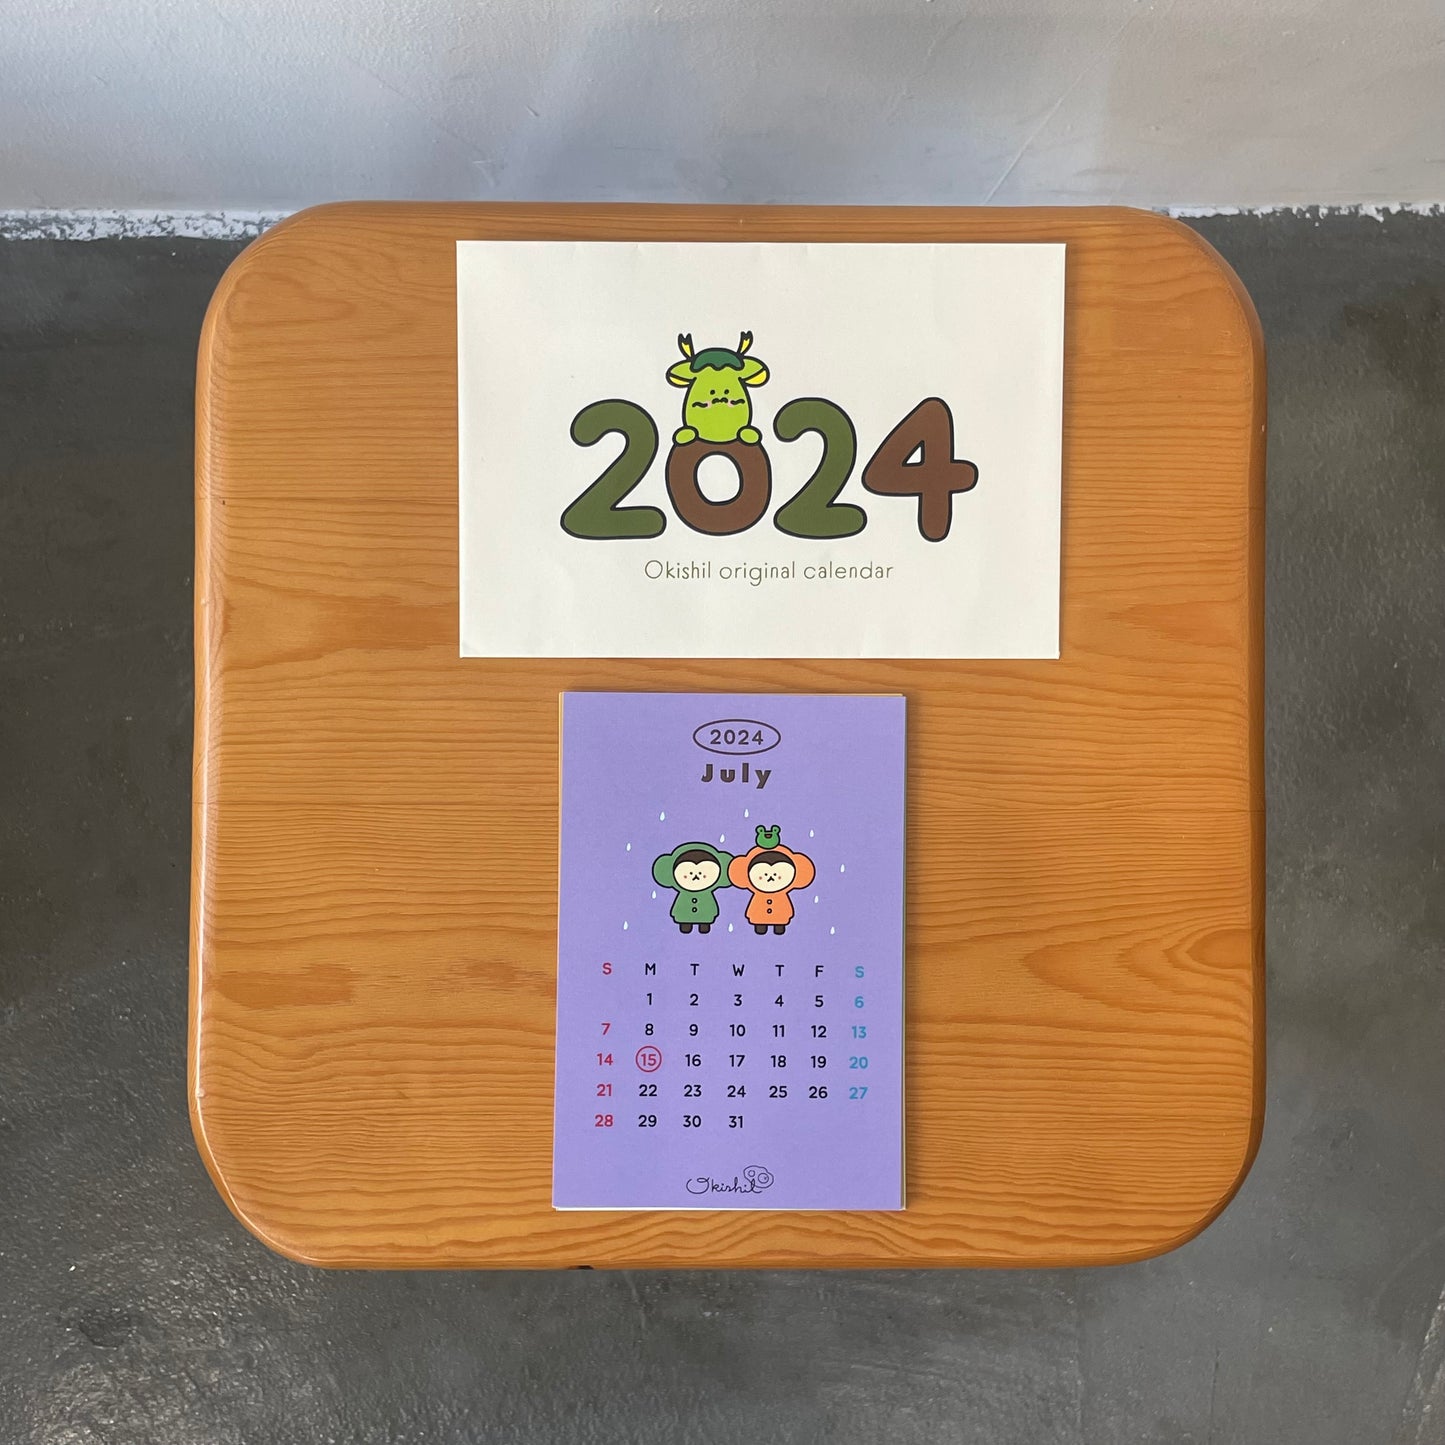 Okishil original calendar 2024